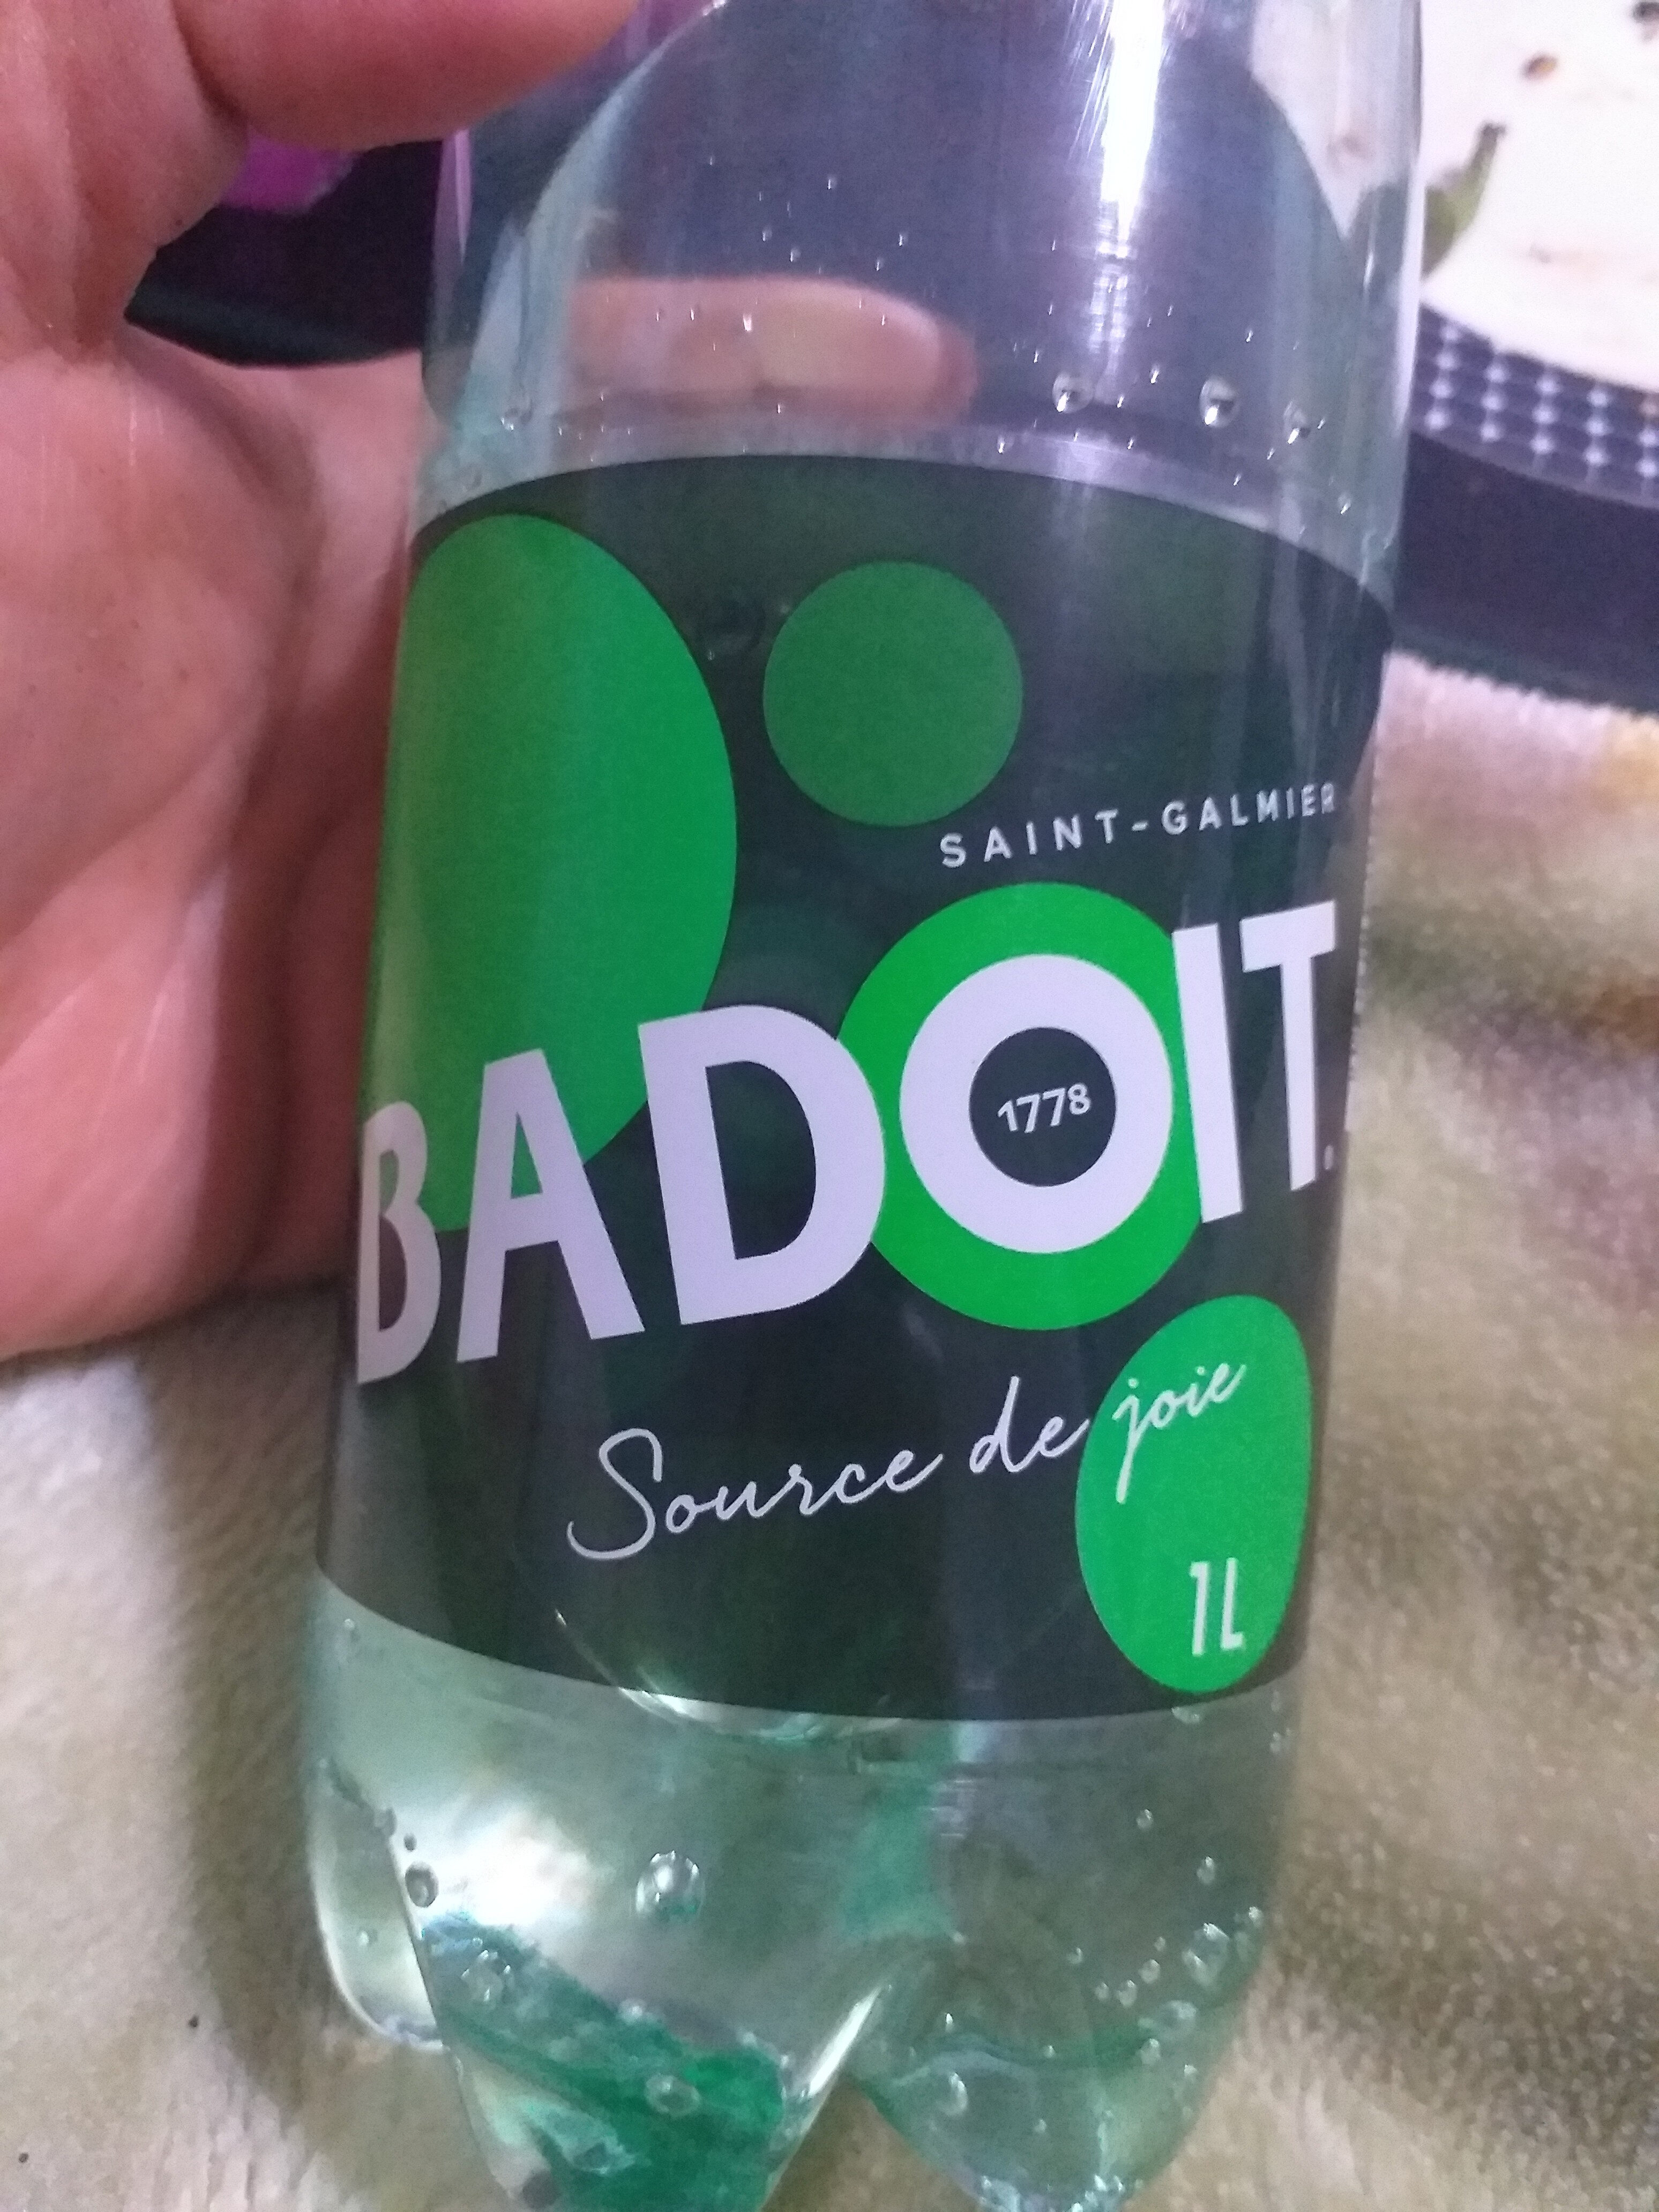 badoit - Product - fr